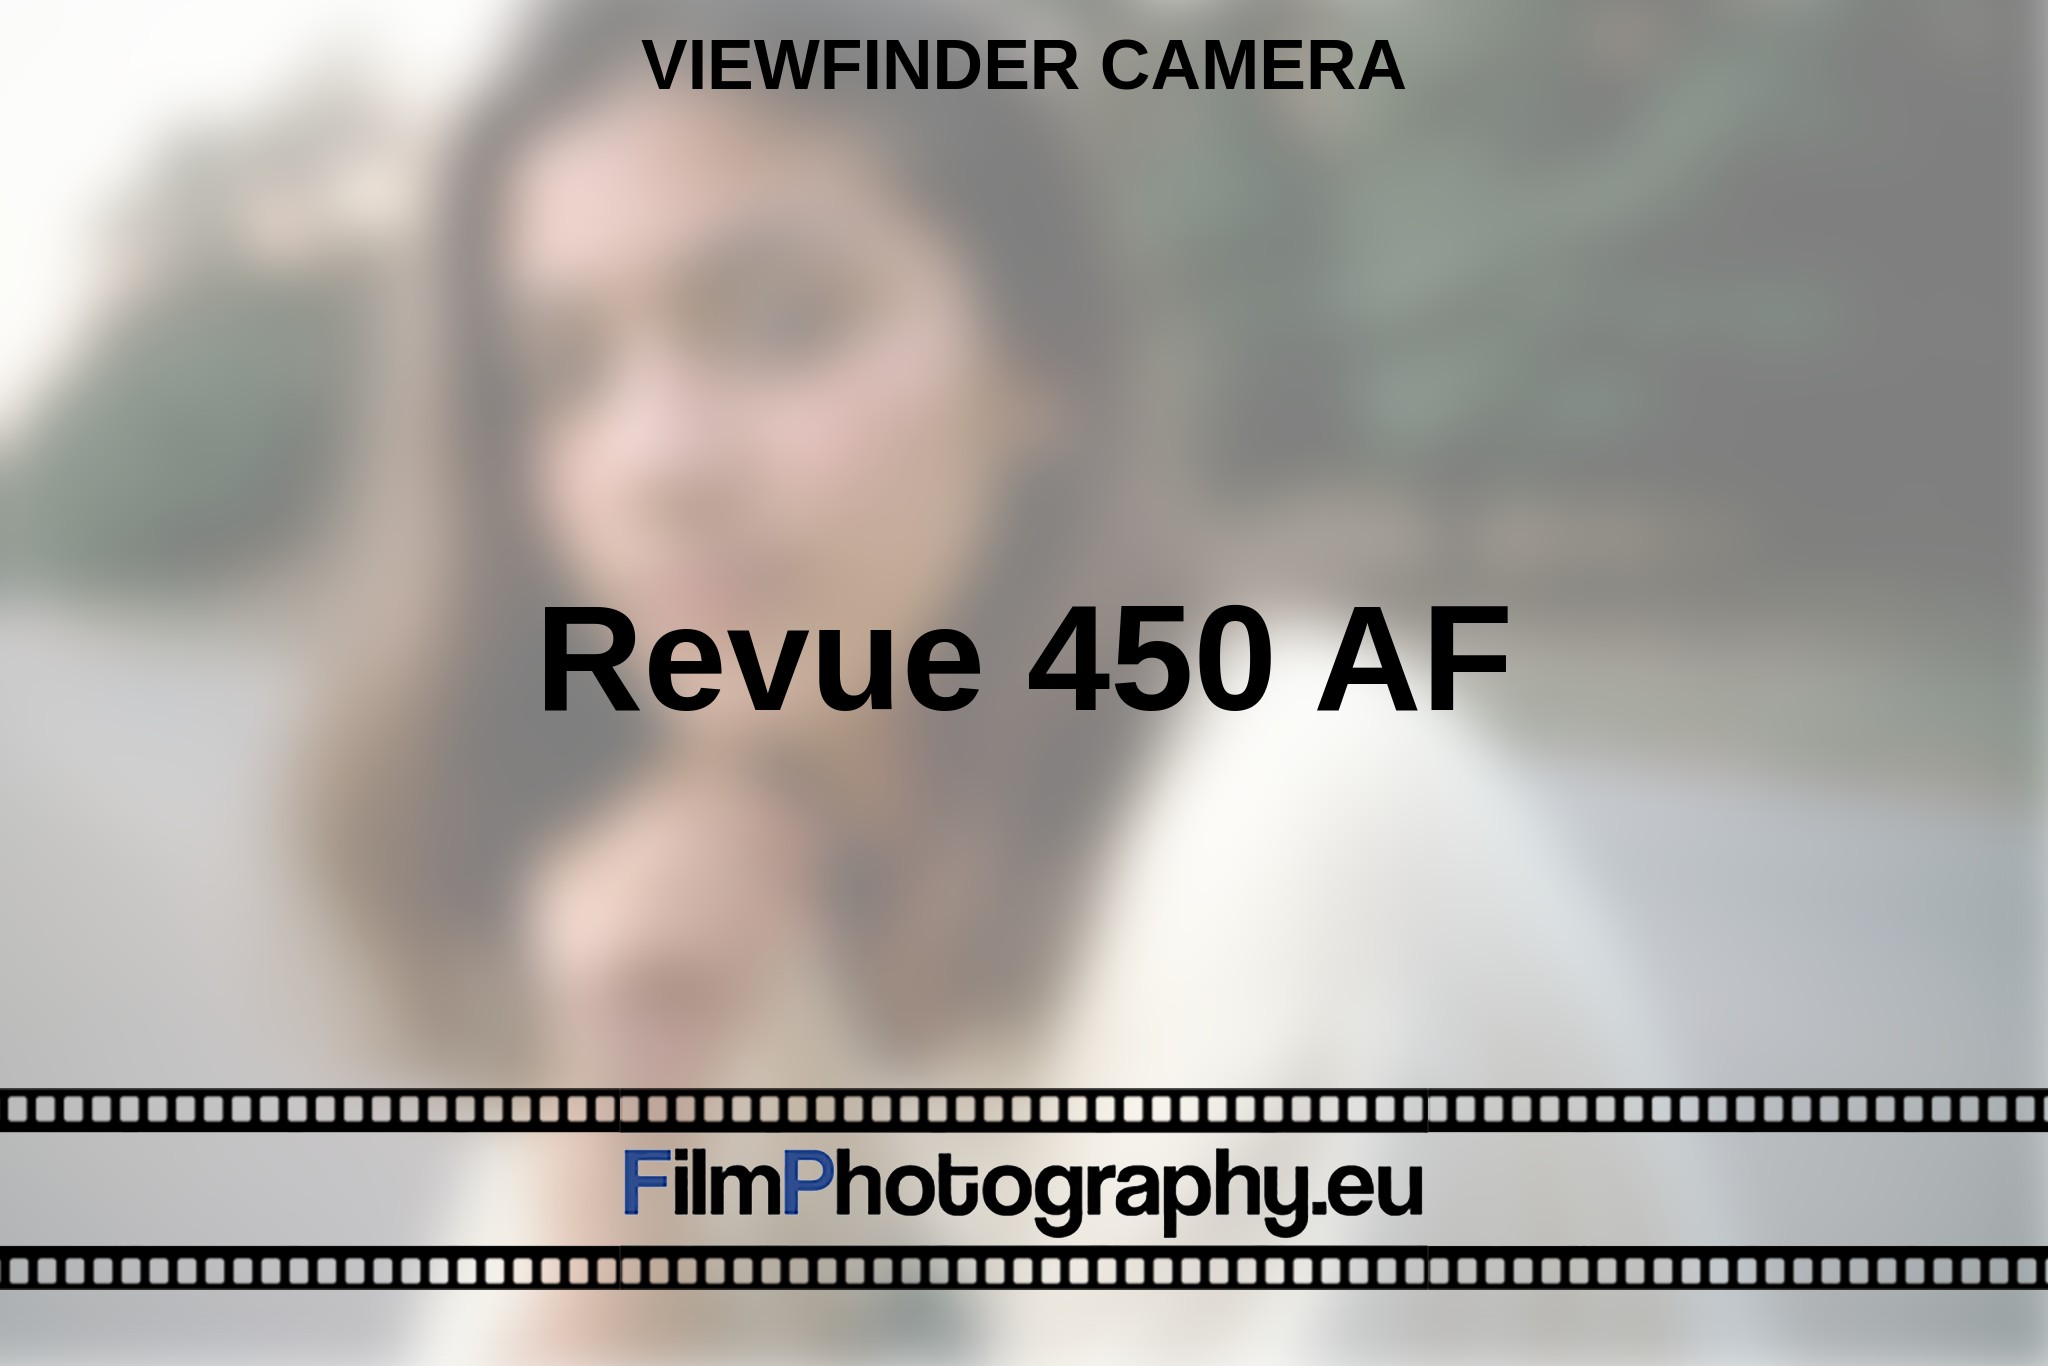 revue-450-af-viewfinder-camera-en-bnv.jpg